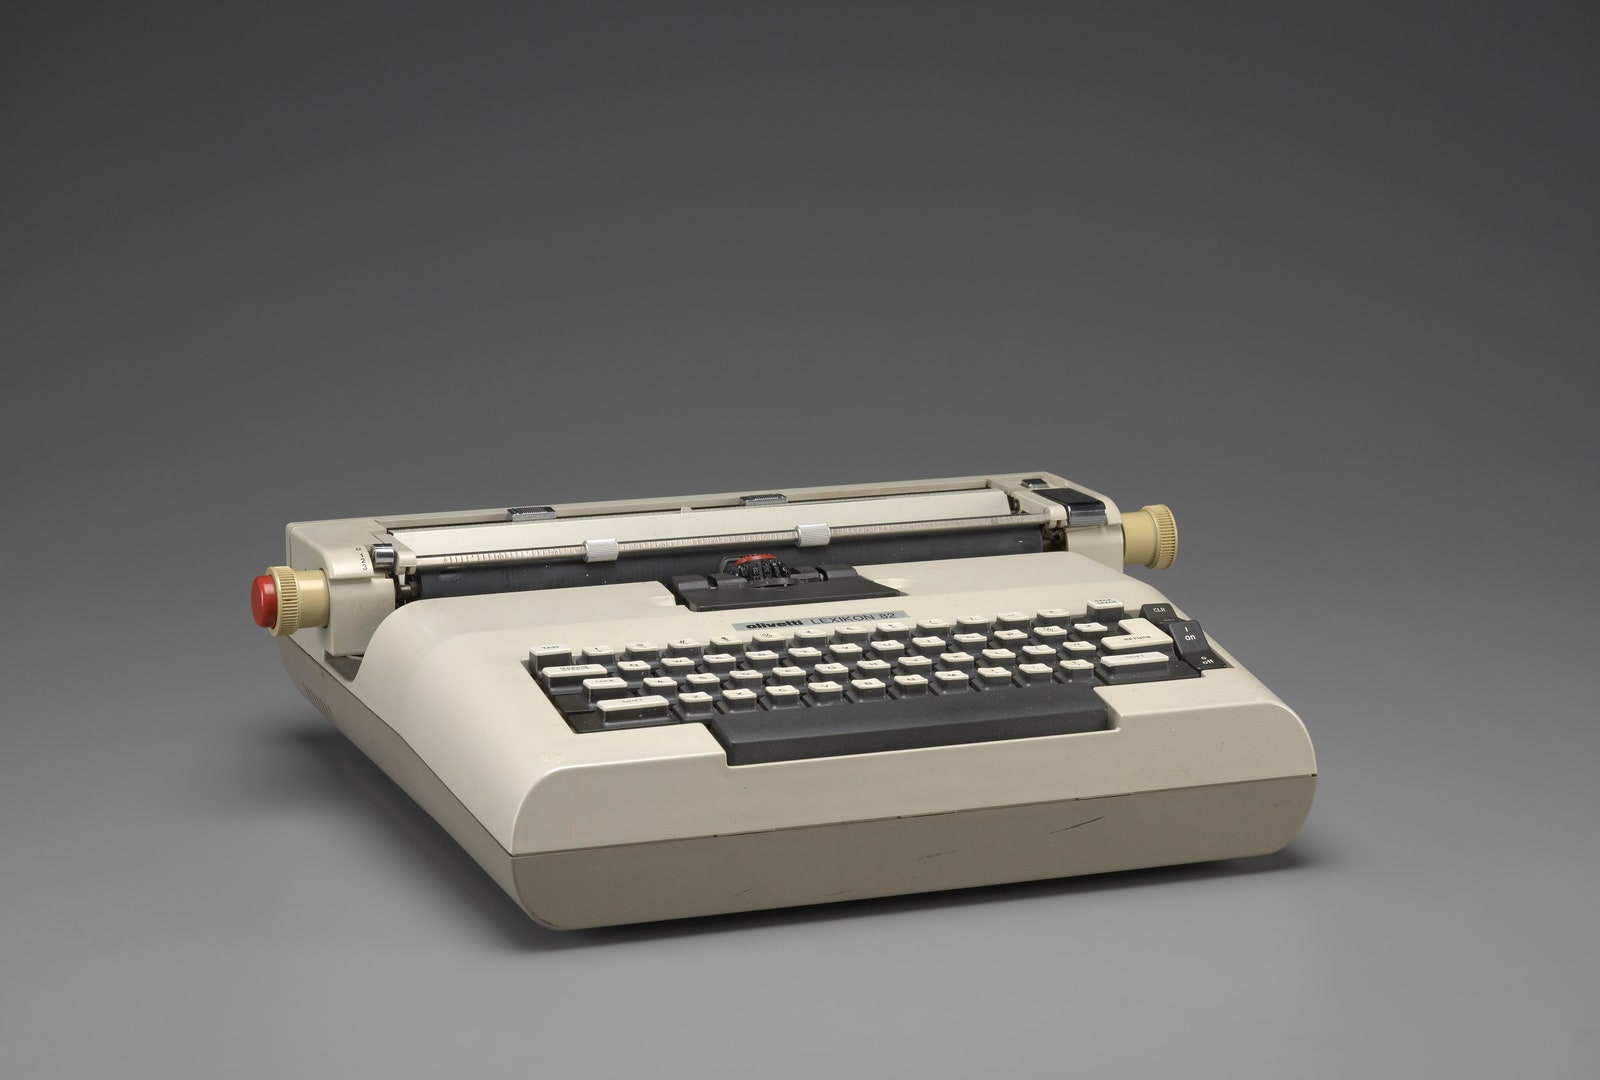 Печатная машинка Lexikon 82 по дизайну Марио Беллини  19721973 годы.